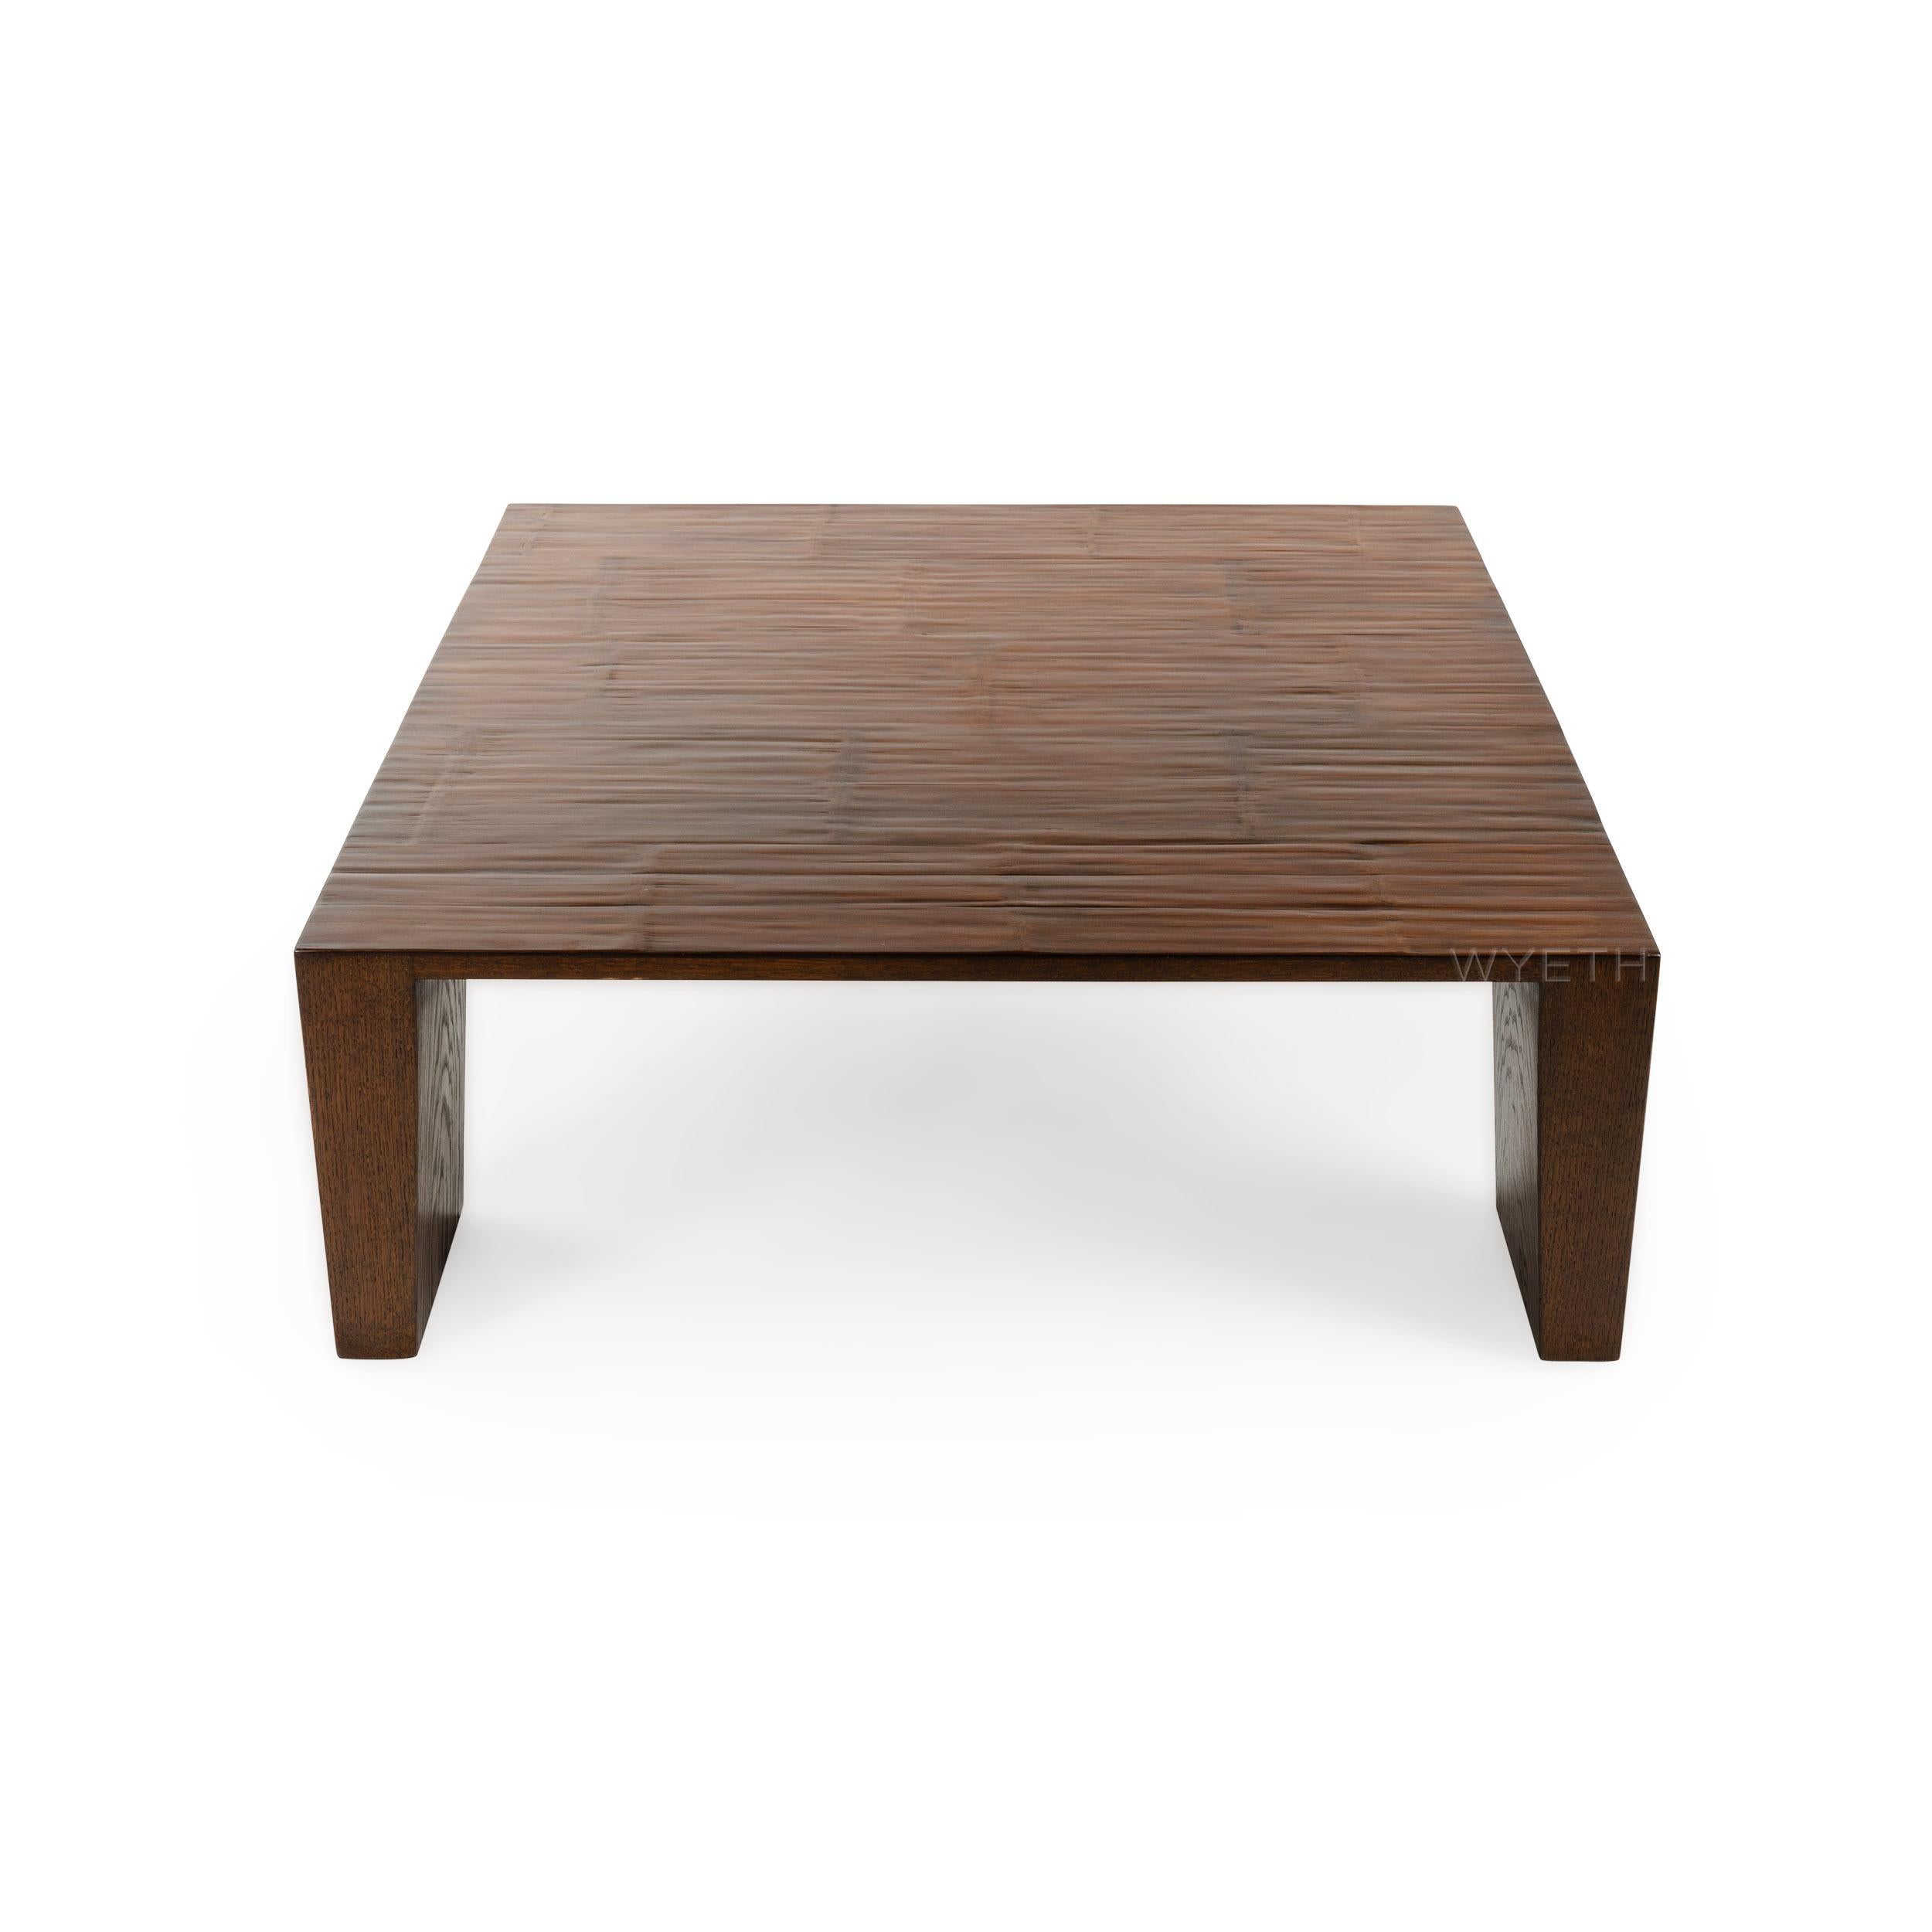 Ein gut gearbeiteter quadratischer niedriger Tisch mit einer Platte aus gespaltenem Bambus und Endbeinen.